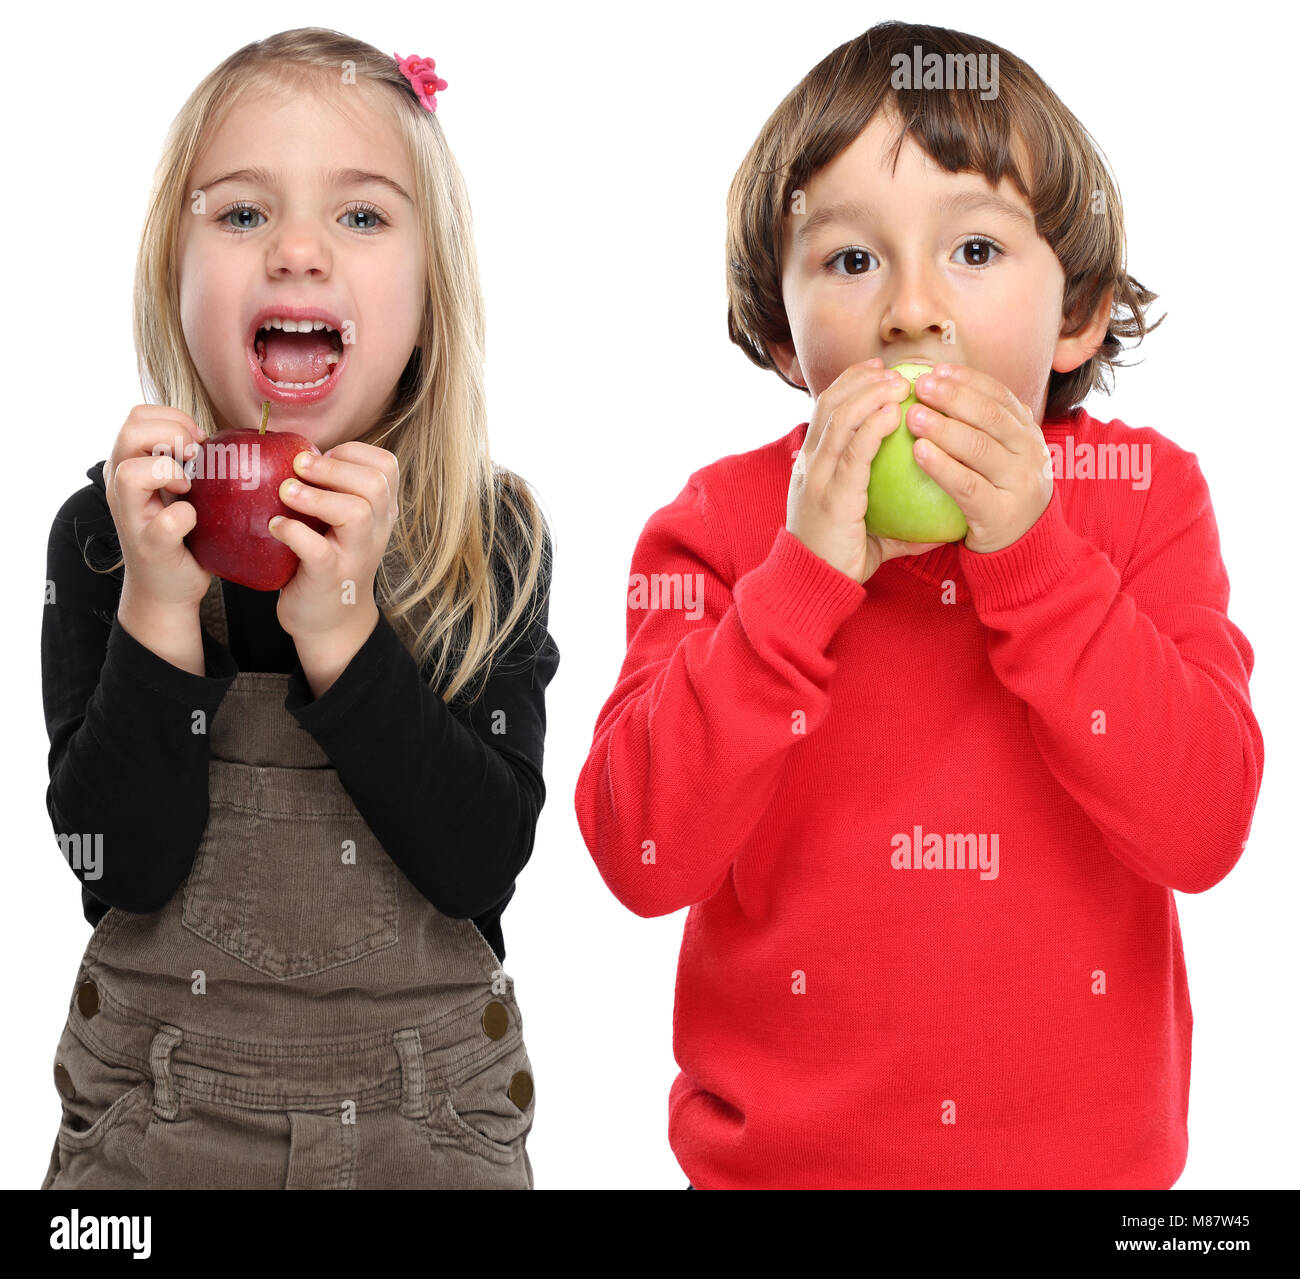 Bambini I bambini di mangiare frutta apple autunno autunno sano isolati su sfondo bianco Foto Stock